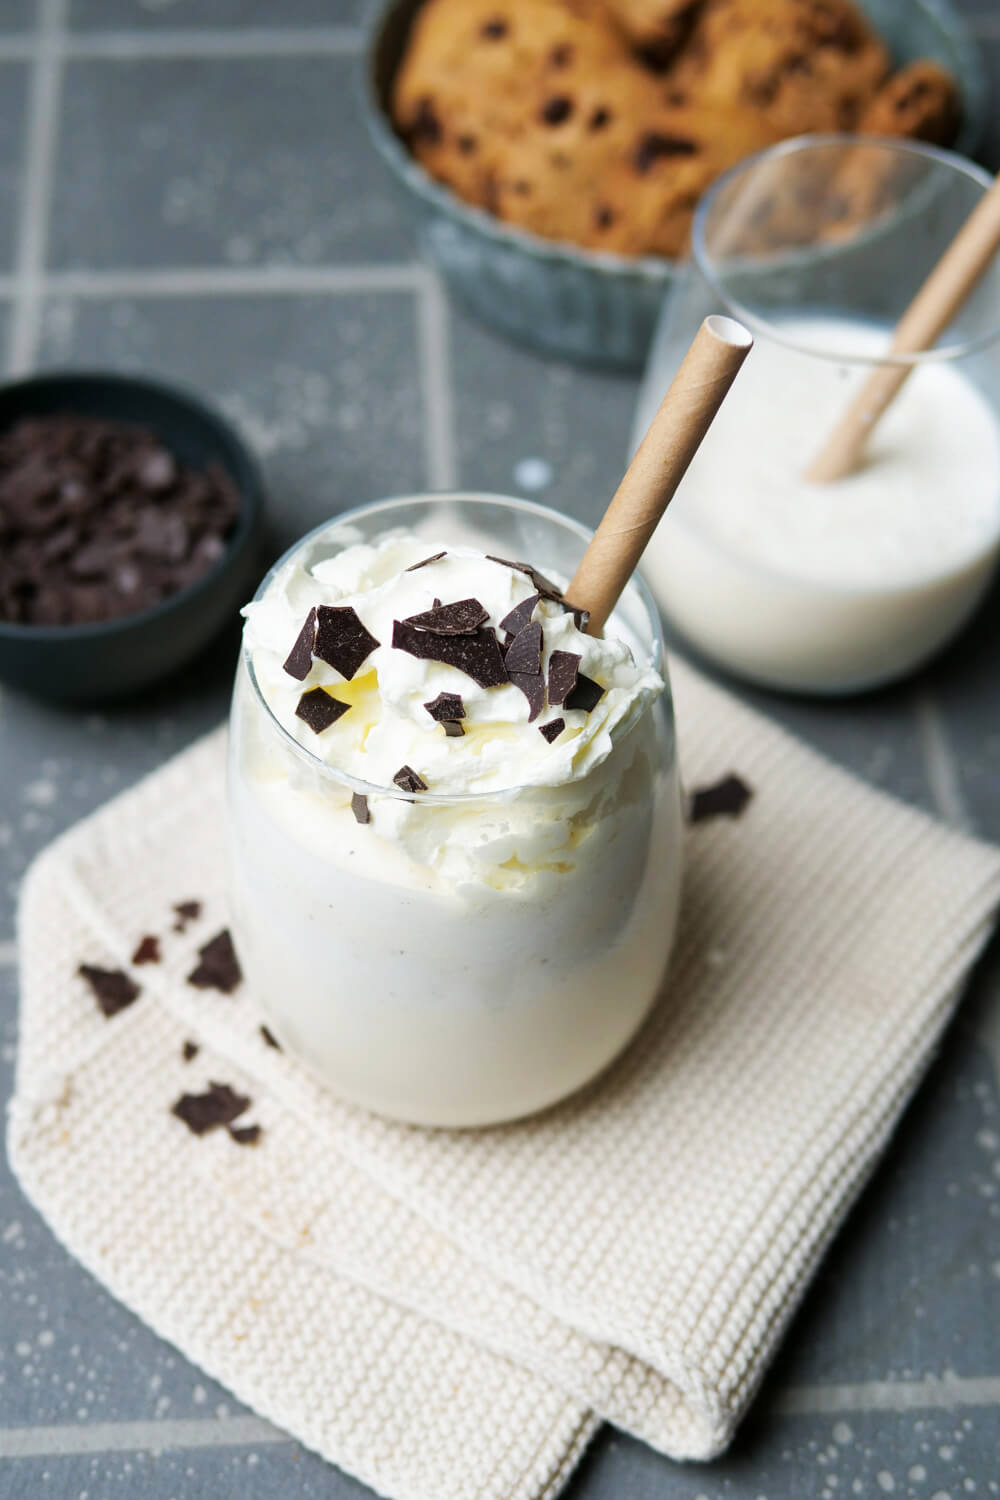 Vanille-Milchshake mit Schokosplitter, Sahne und Strohhalm in einem Glas.